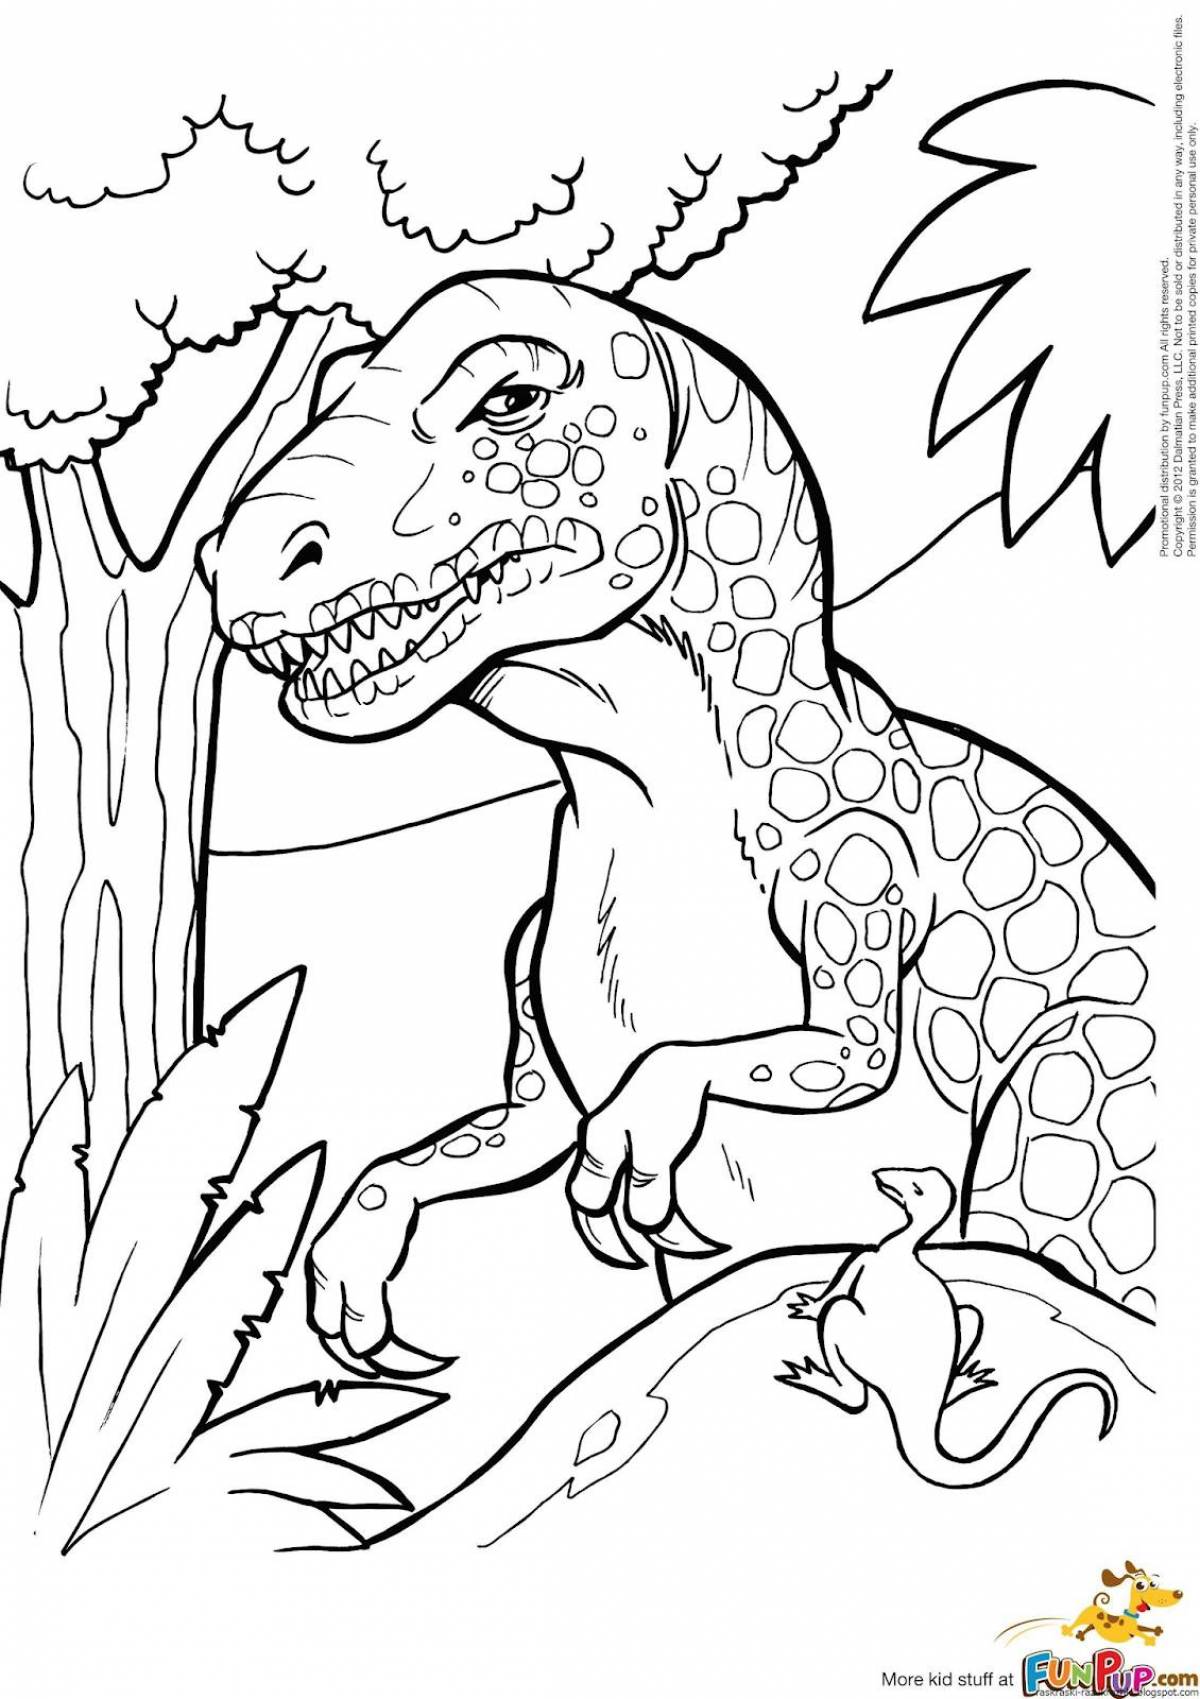 Анимированные раскраски динозавров для детей